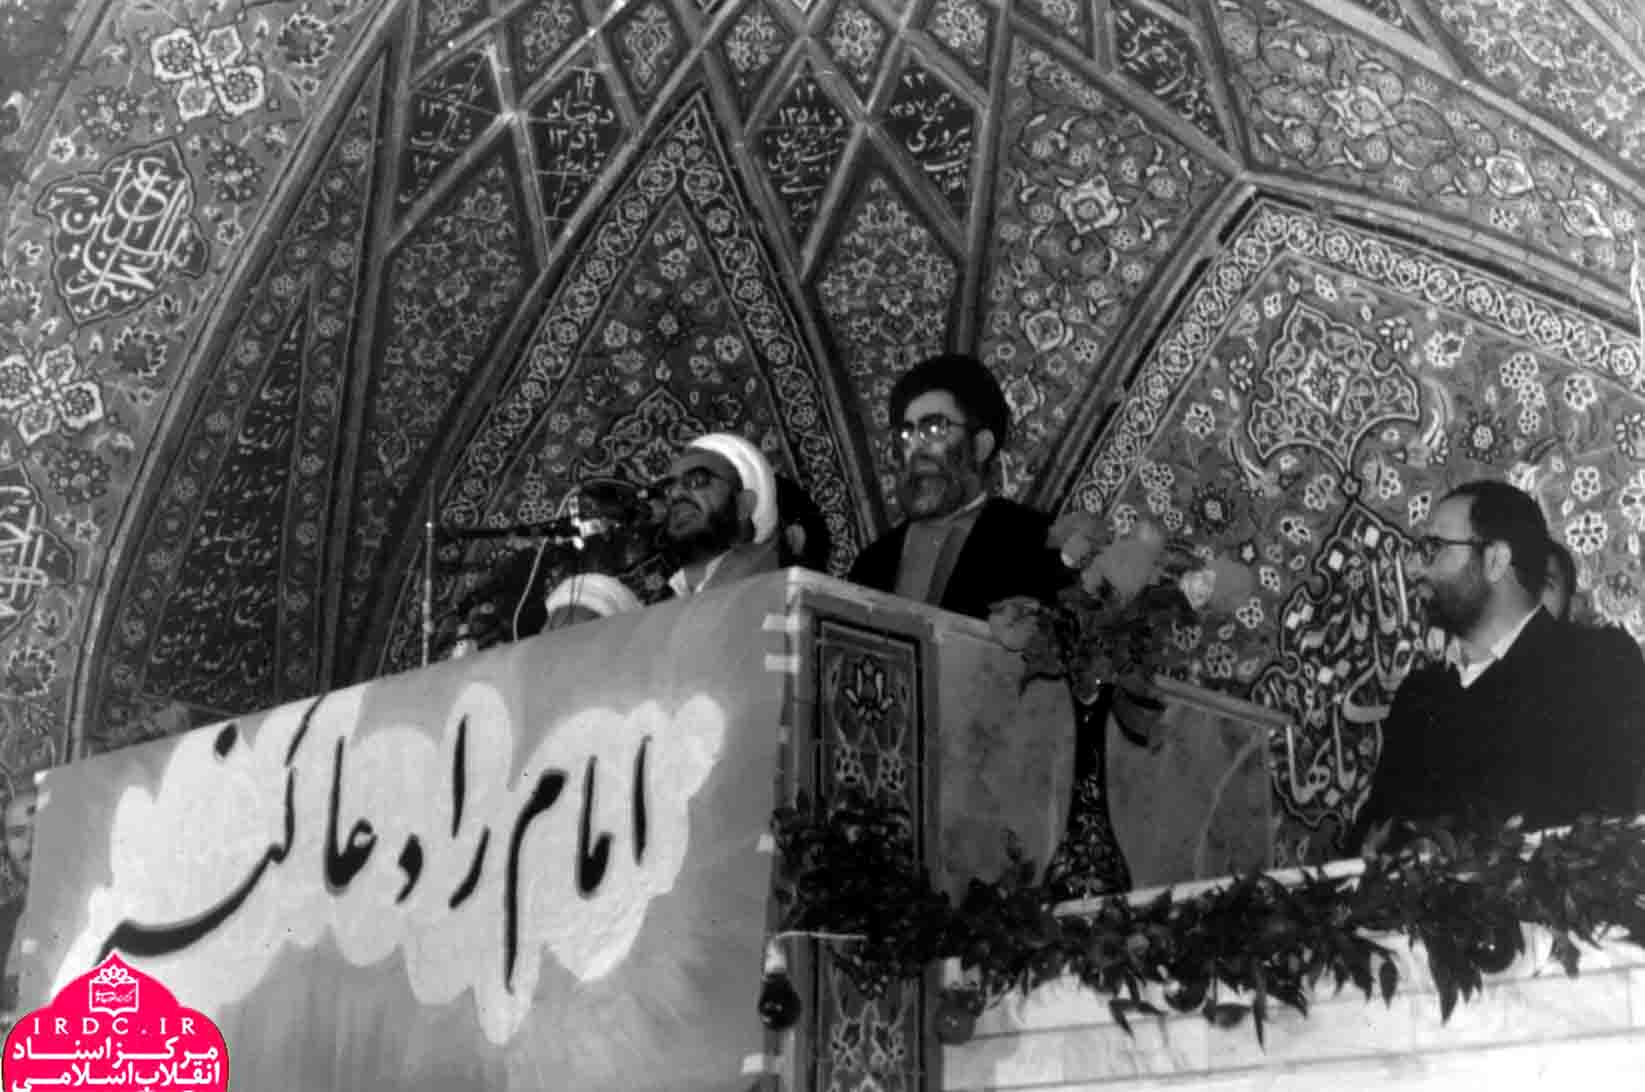 حجت‌الاسلام شیخ حسین عمادی در قاب تصویر